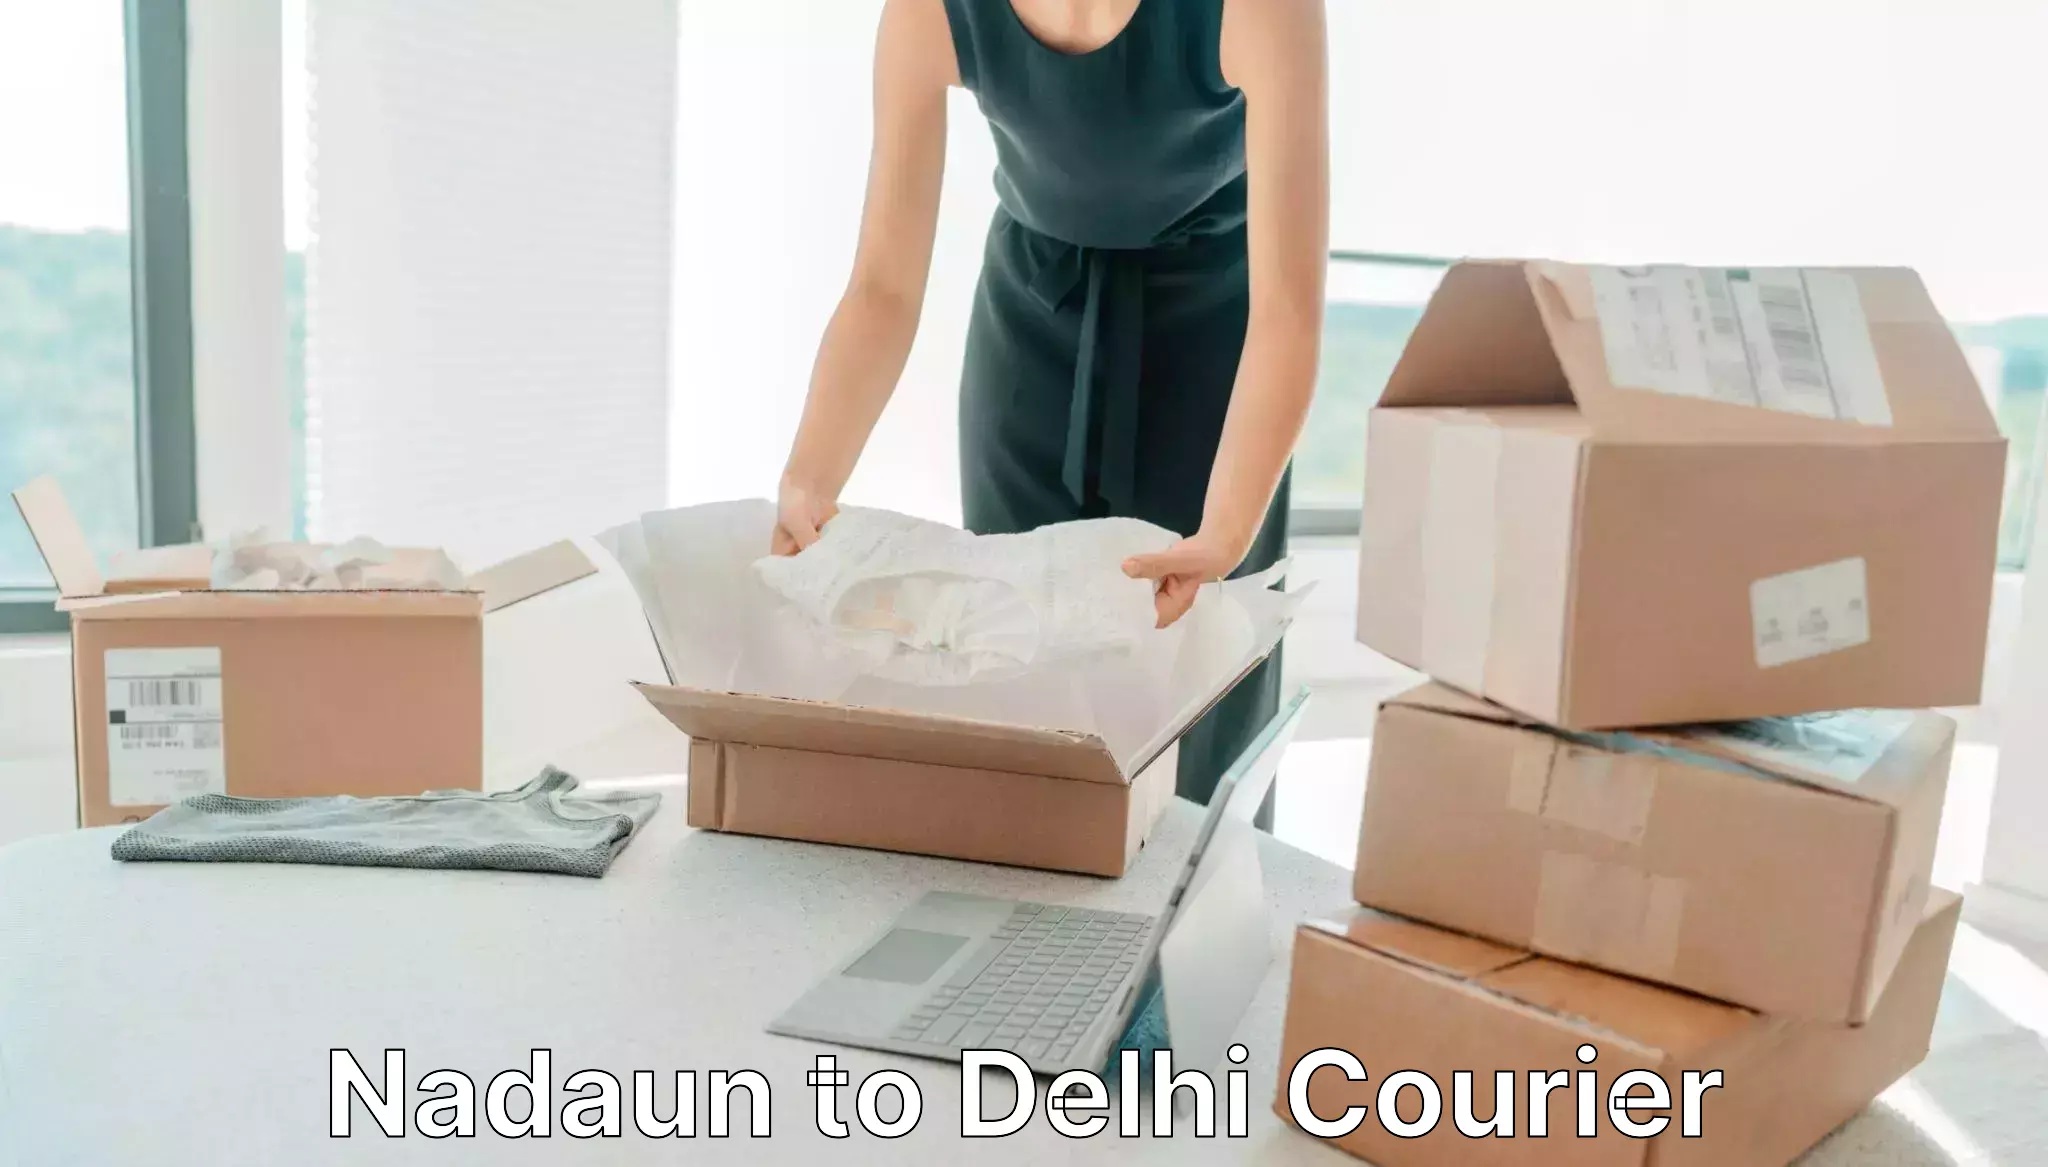 Courier app Nadaun to Sarojini Nagar